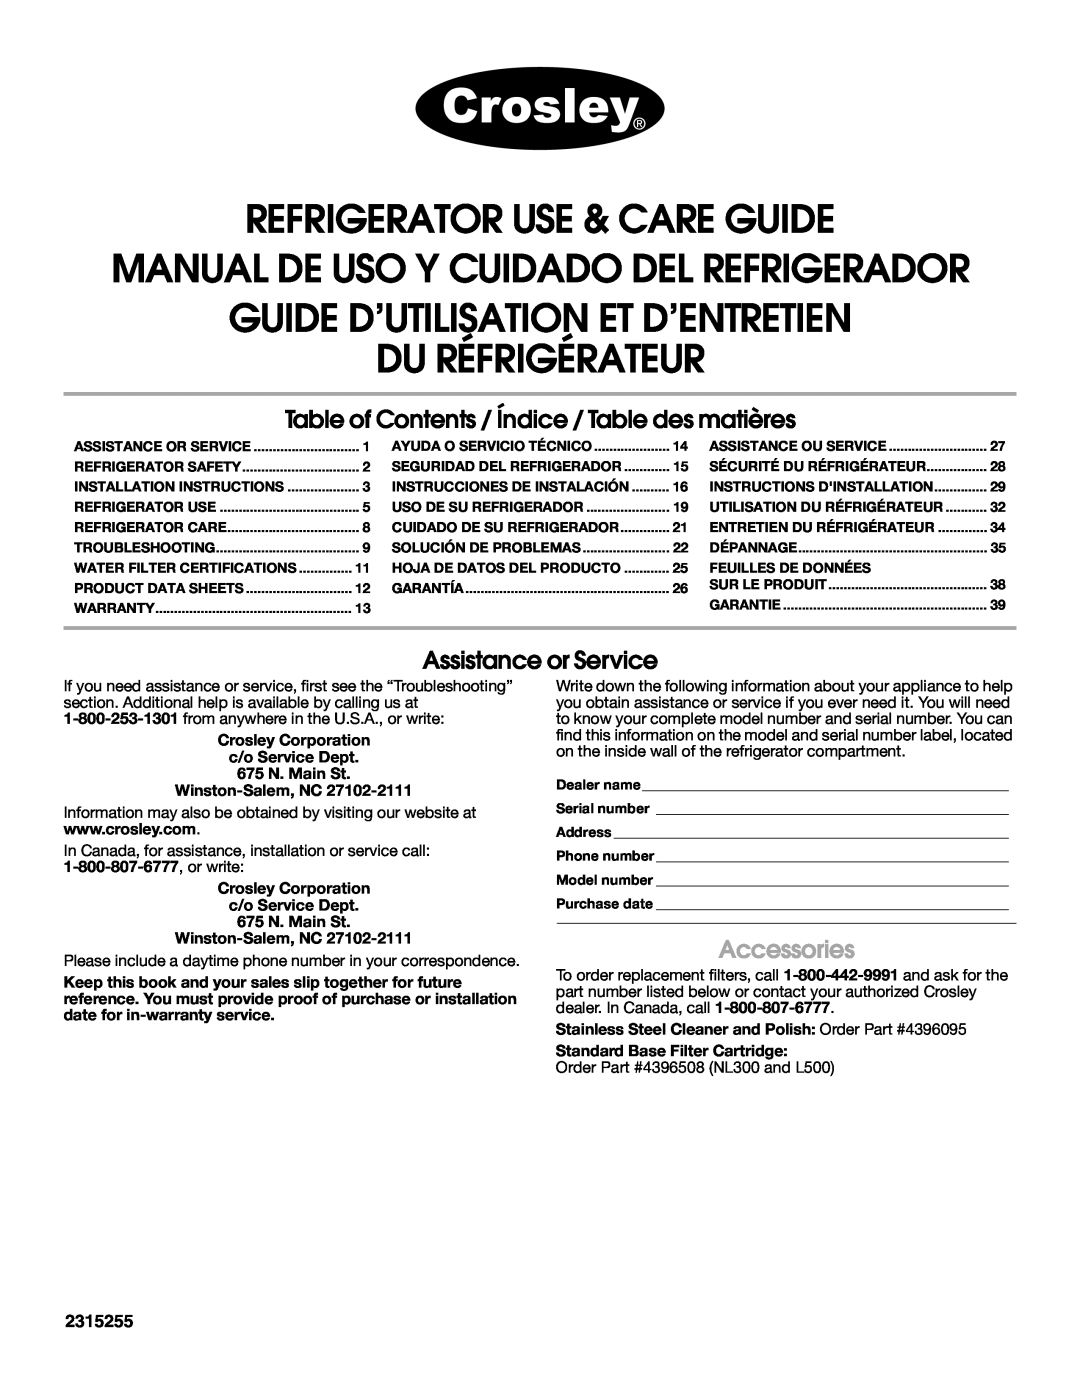 Crosley CS25AFXKT05 warranty Refrigerator Use & Care Guide, Manual De Uso Y Cuidado Del Refrigerador, Accessories, 2315255 